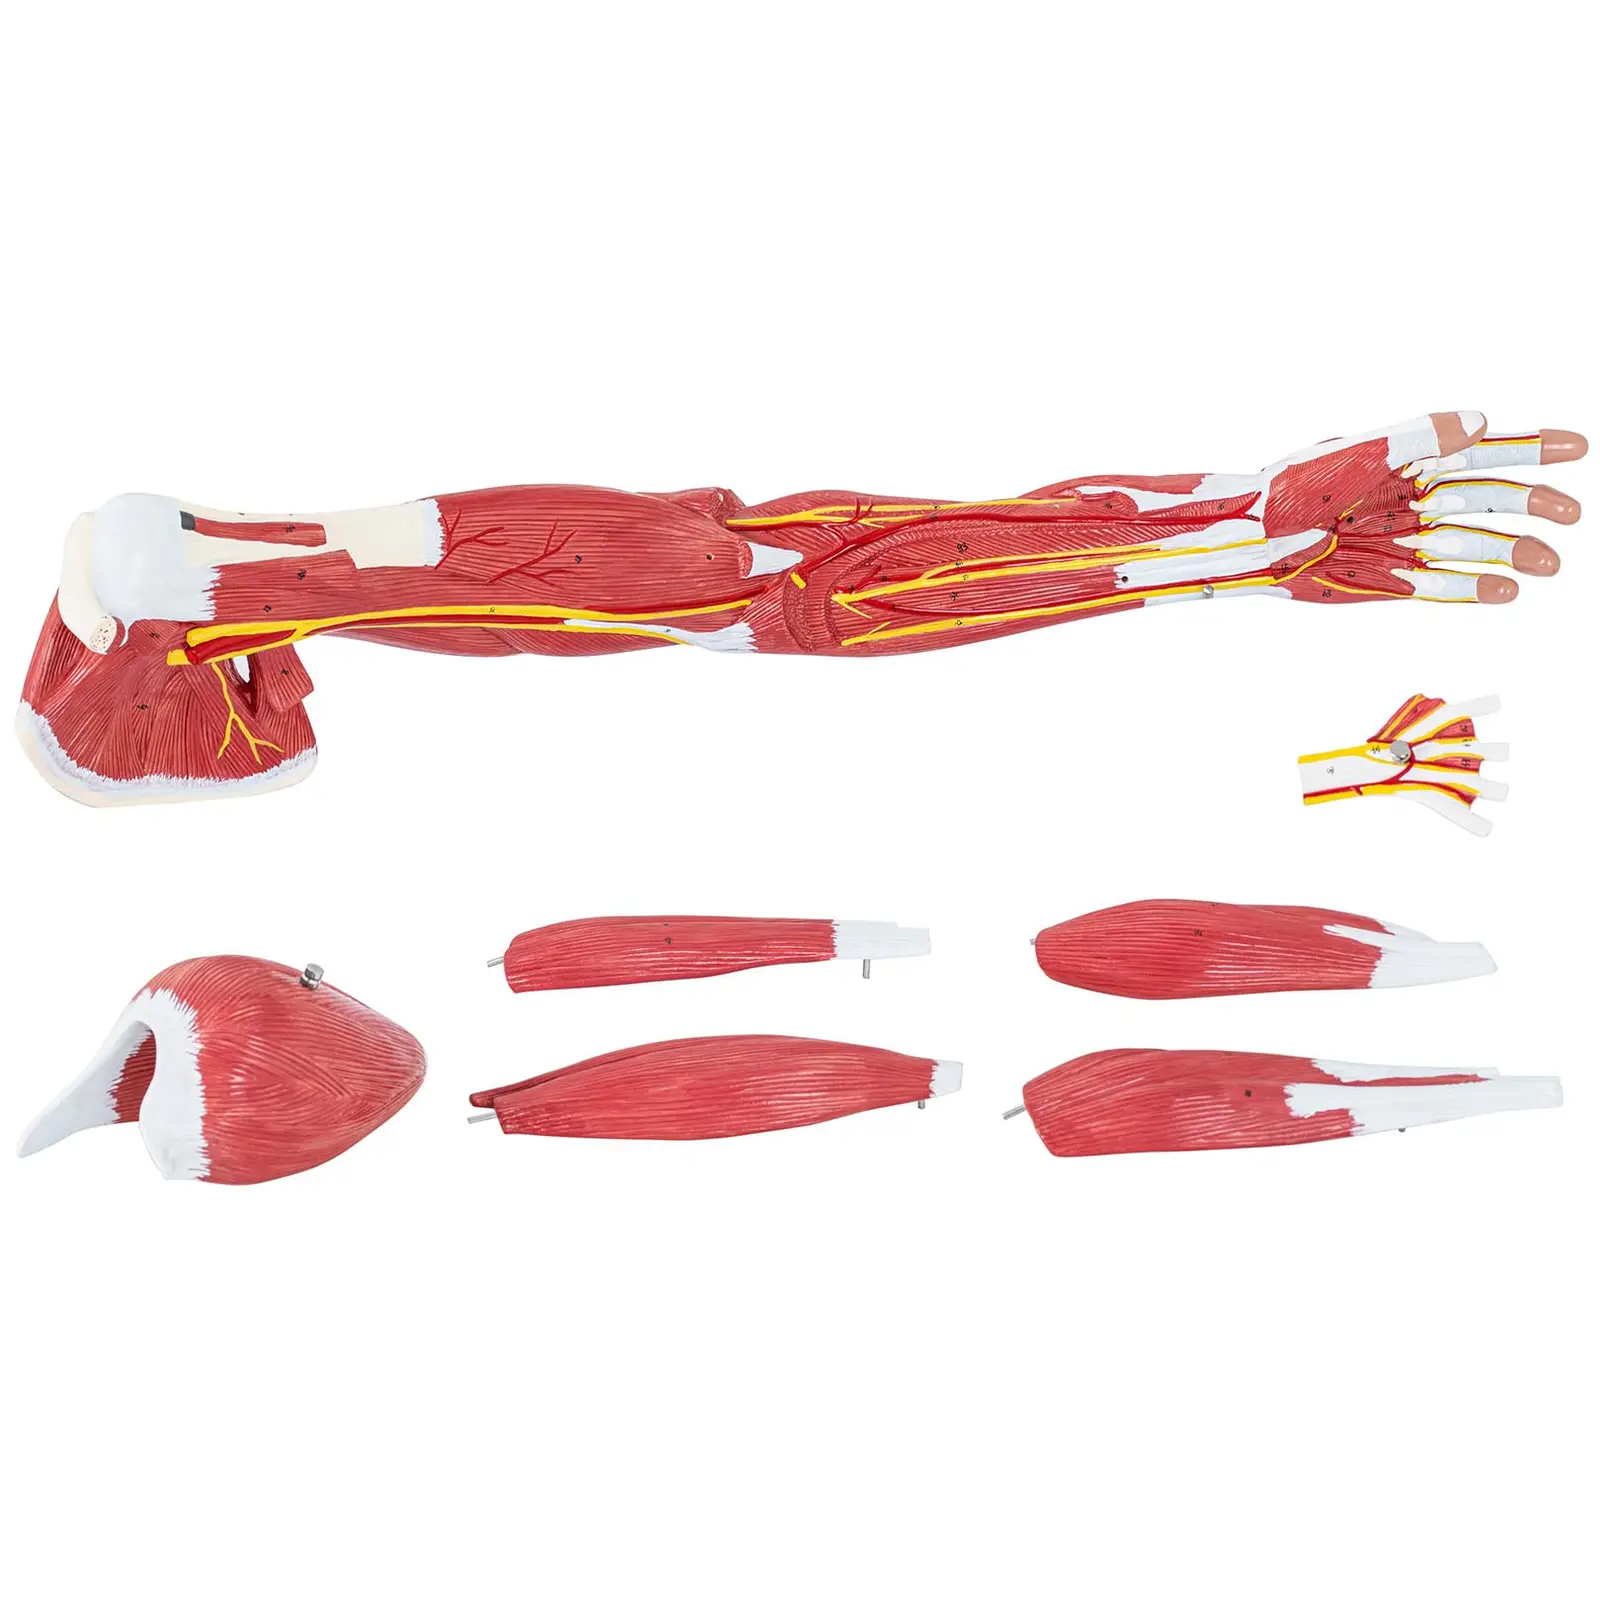 Anatominen malli - käsivarsi - seitsemän osaa - luonnollinen koko